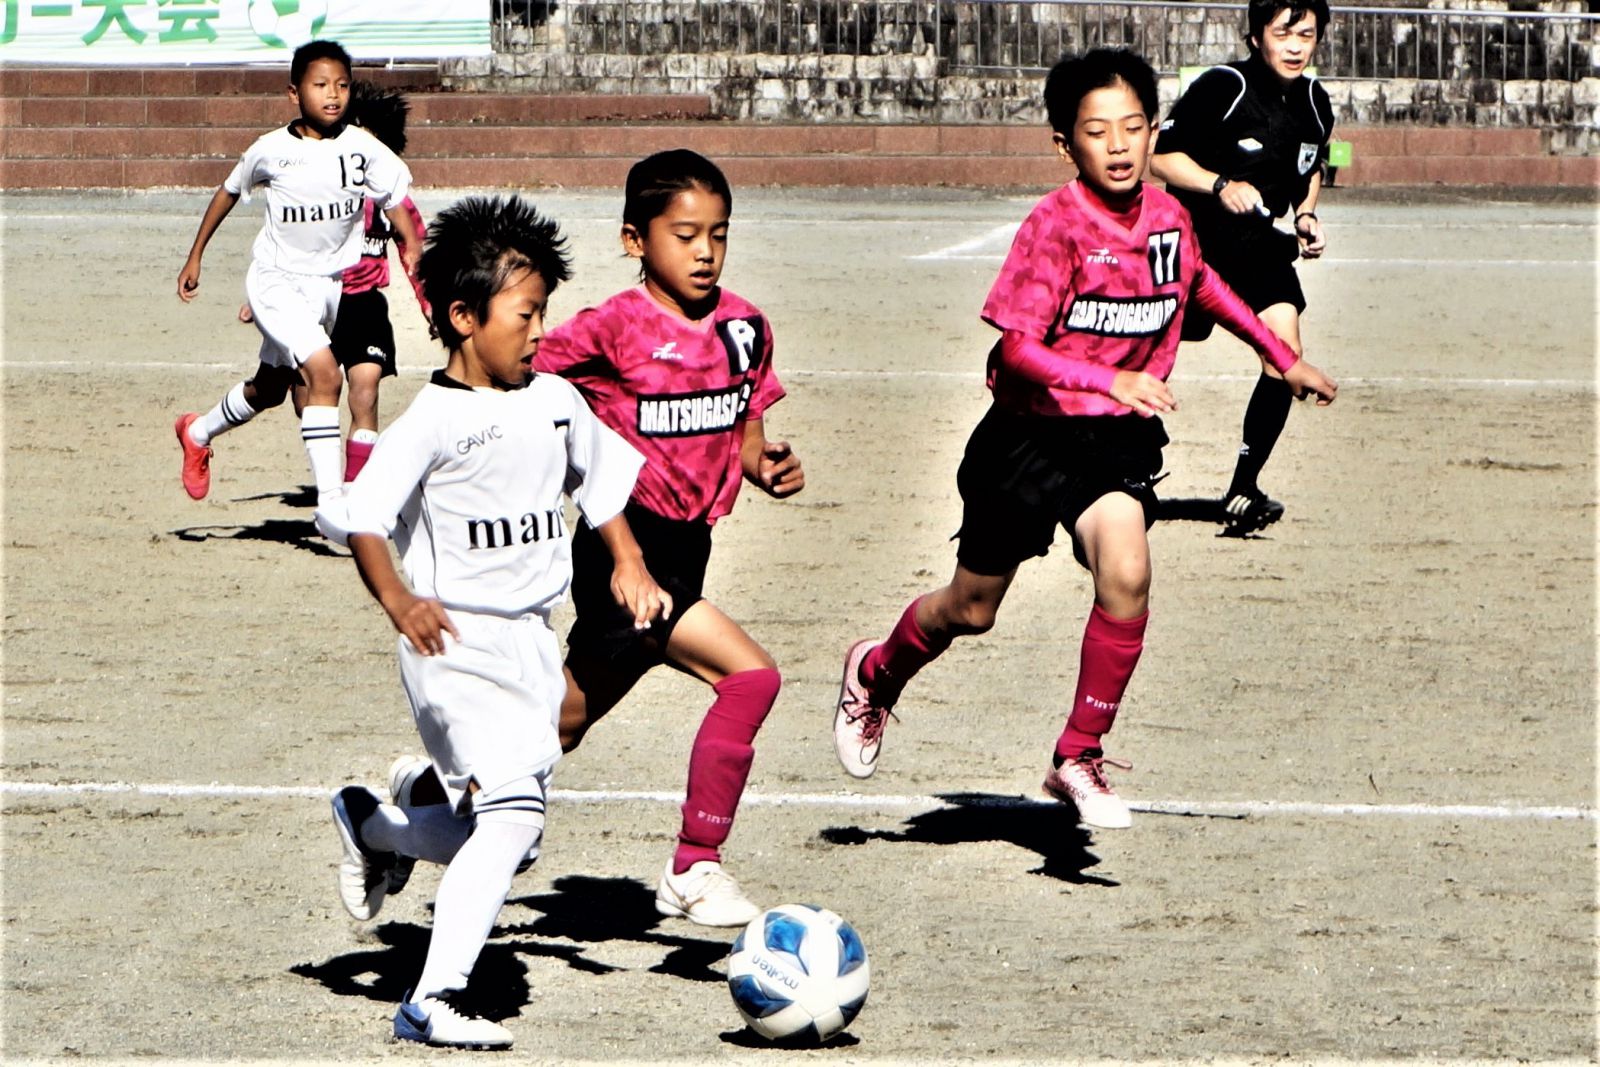 第1回 Okaya Cup 三重県 少年 少女 U 10 サッカー大会が開催されました 岡谷鋼機株式会社